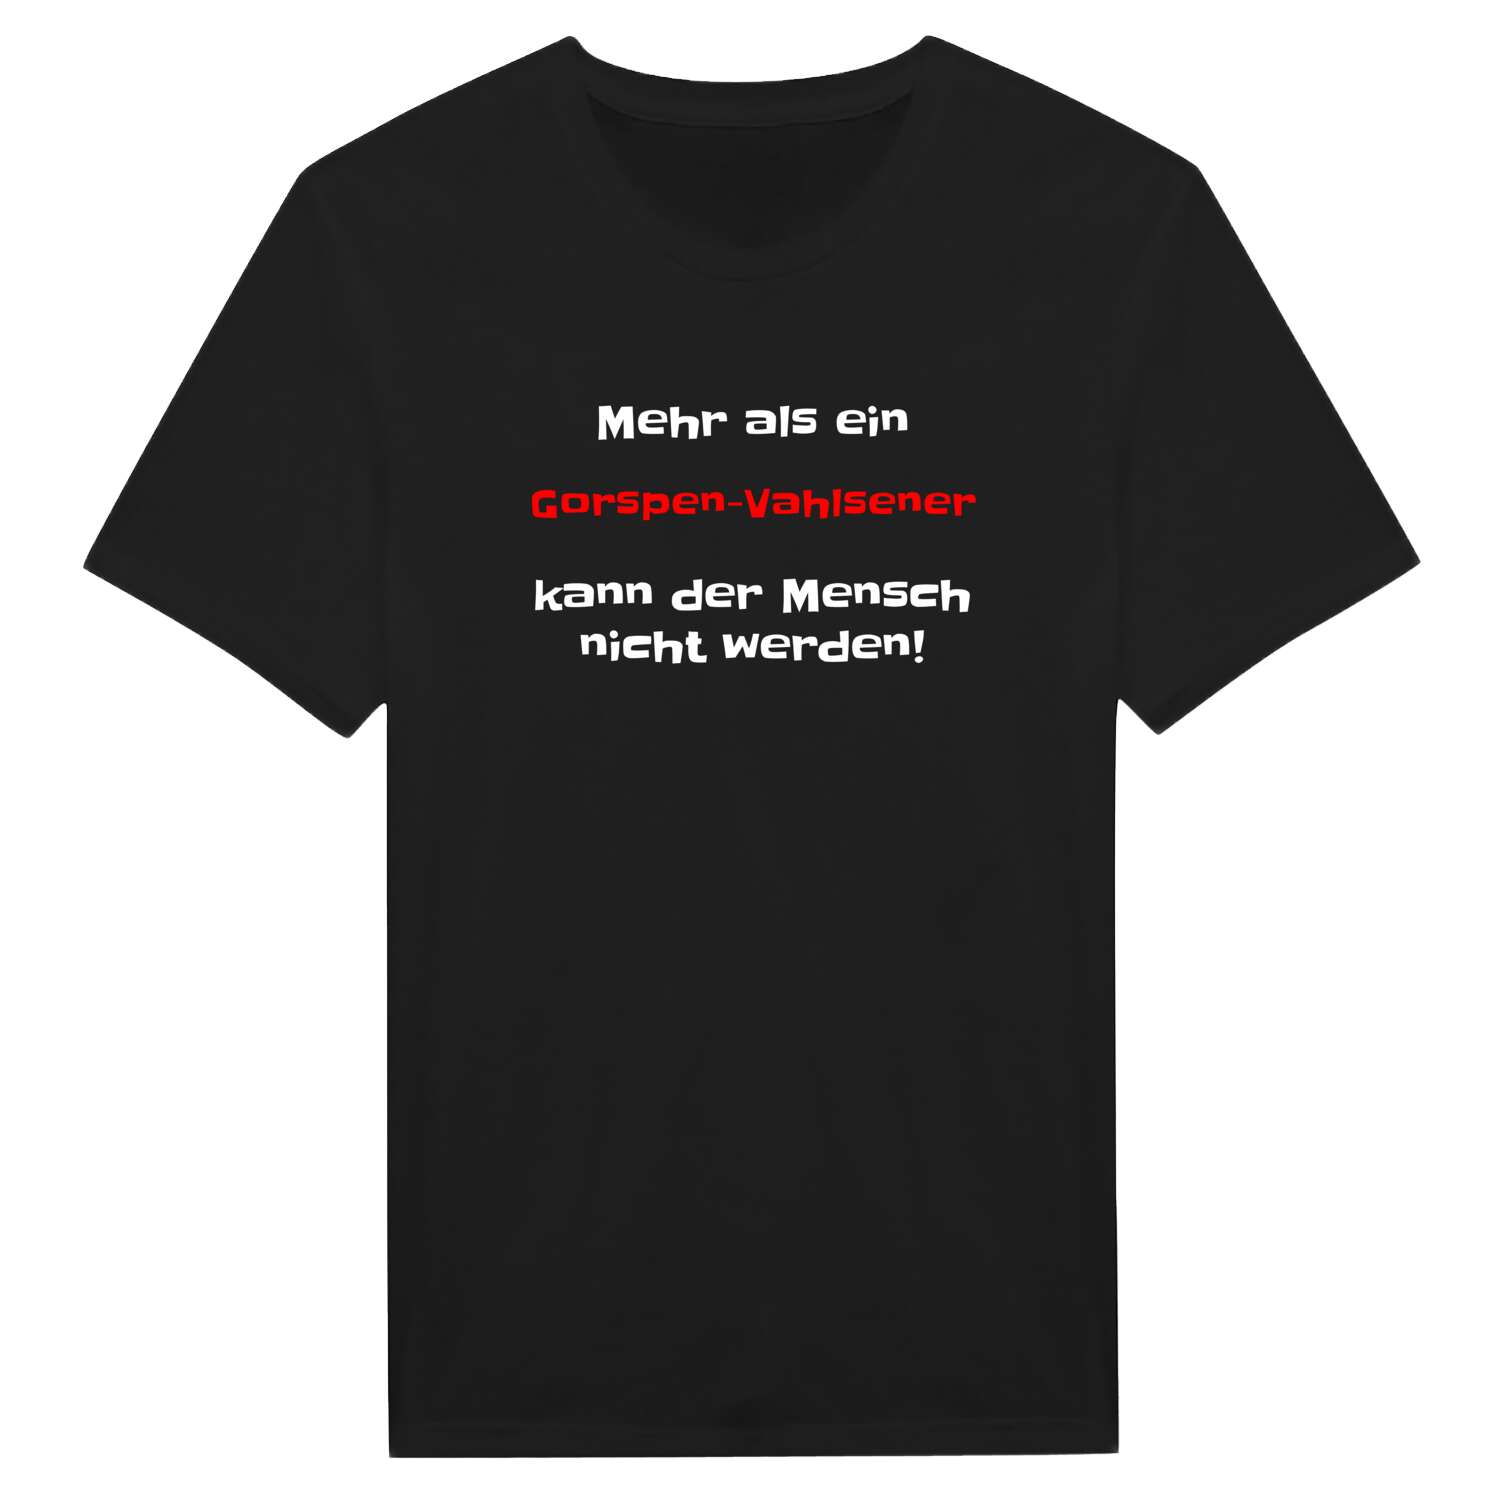 Gorspen-Vahlsen T-Shirt »Mehr als ein«